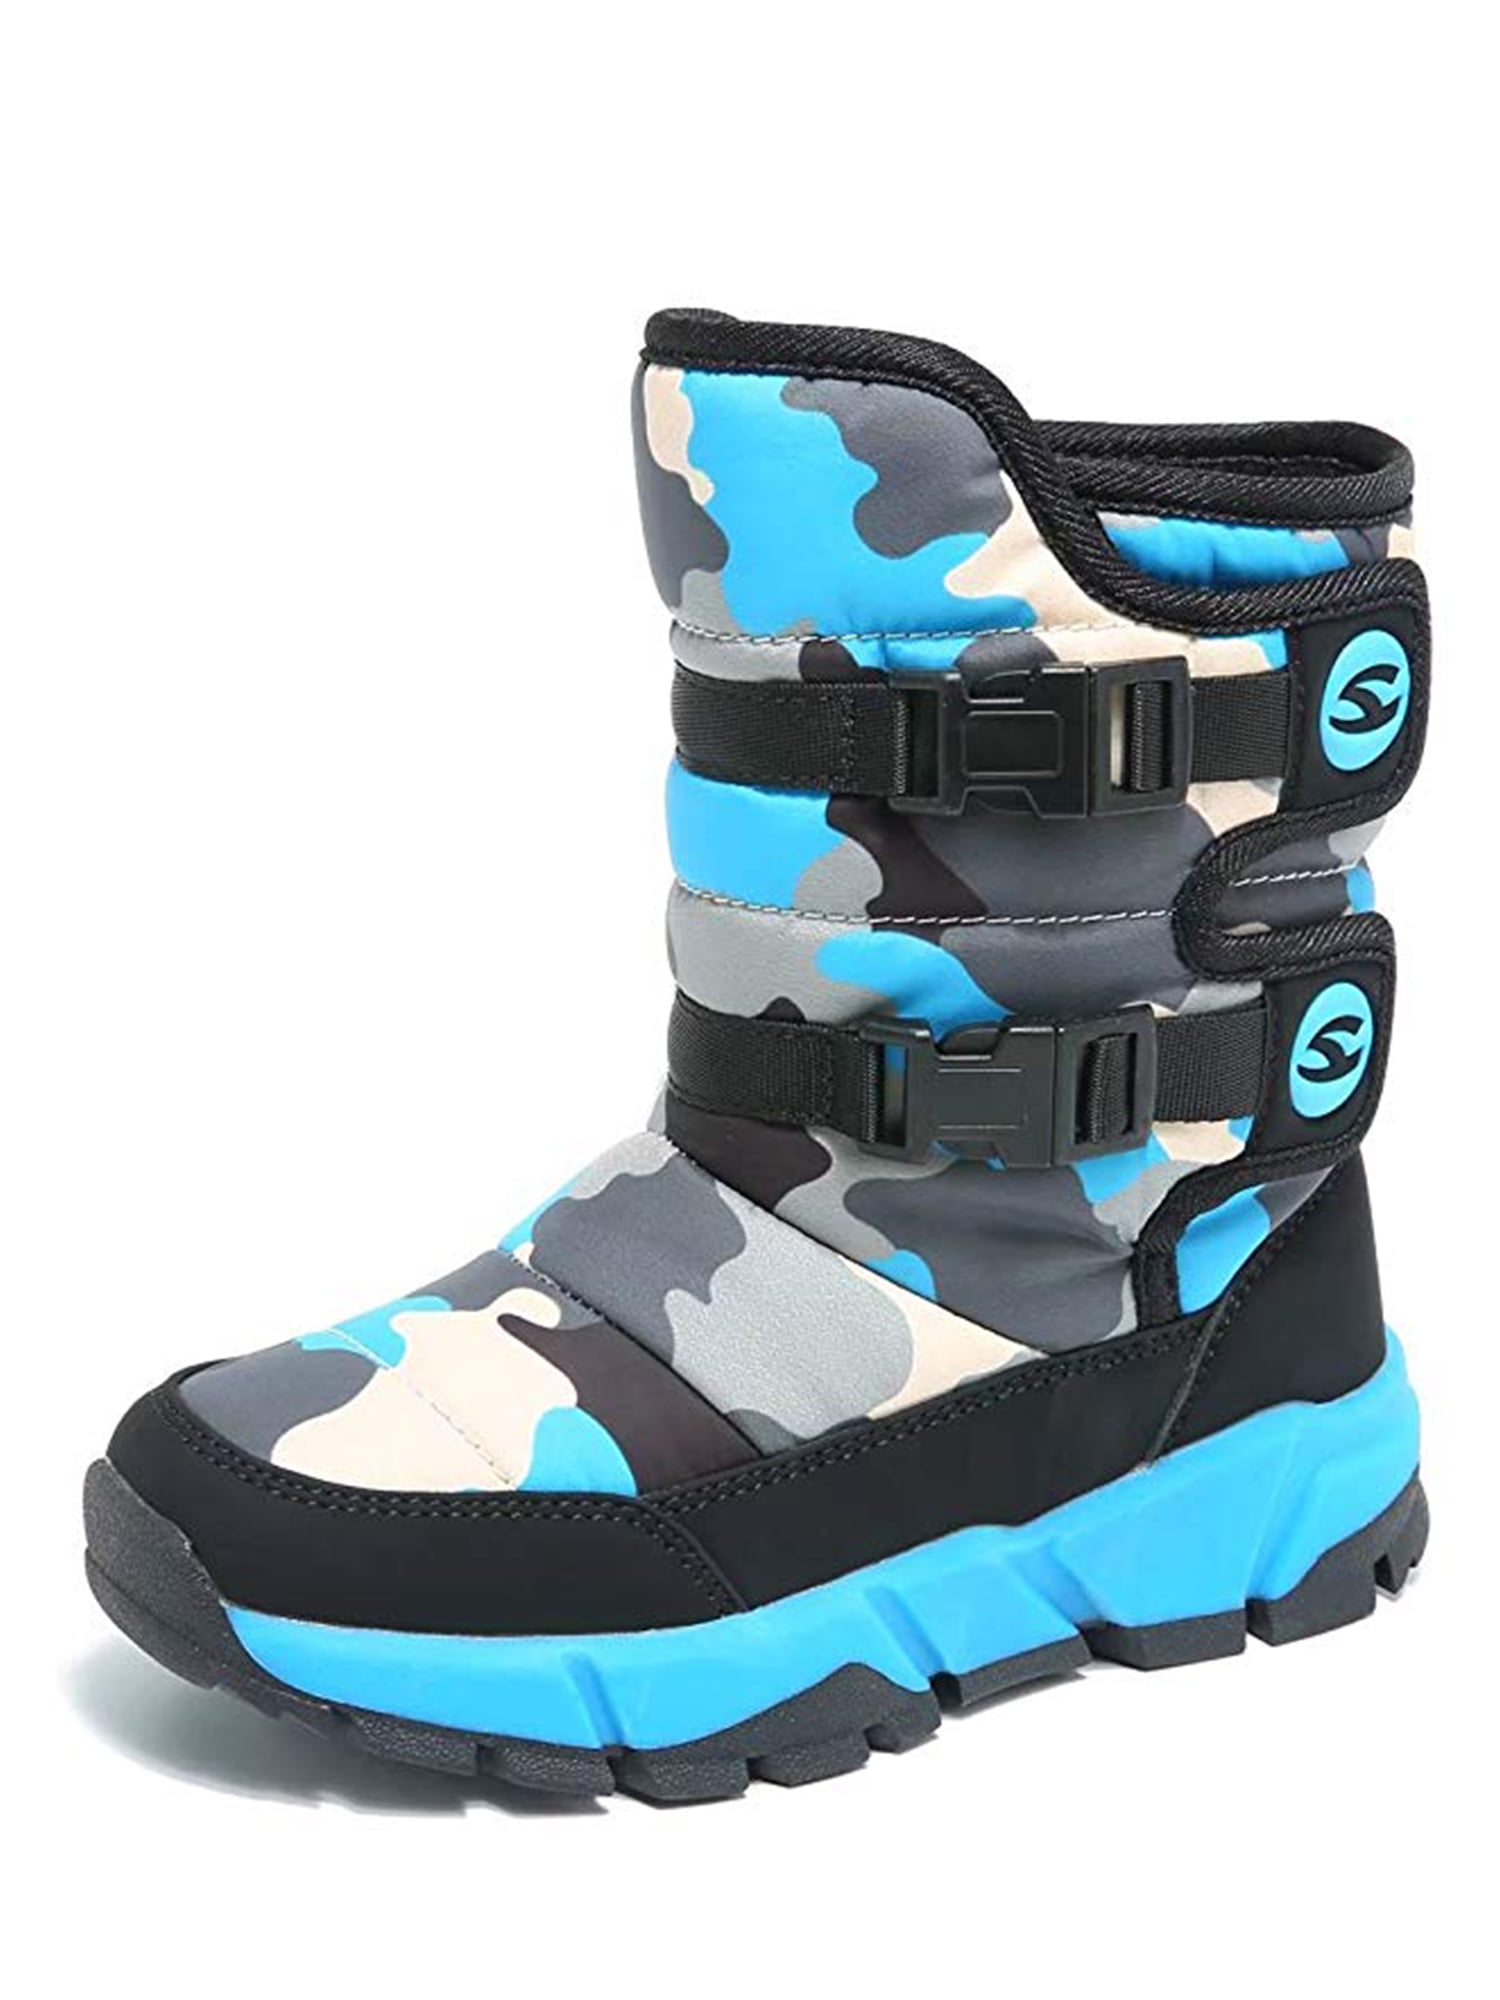 Little Kid/Big Kid Mandy❤Baby Soft Sole Warm Winter Slip On Prewalker Anti-Slip Snow Boots